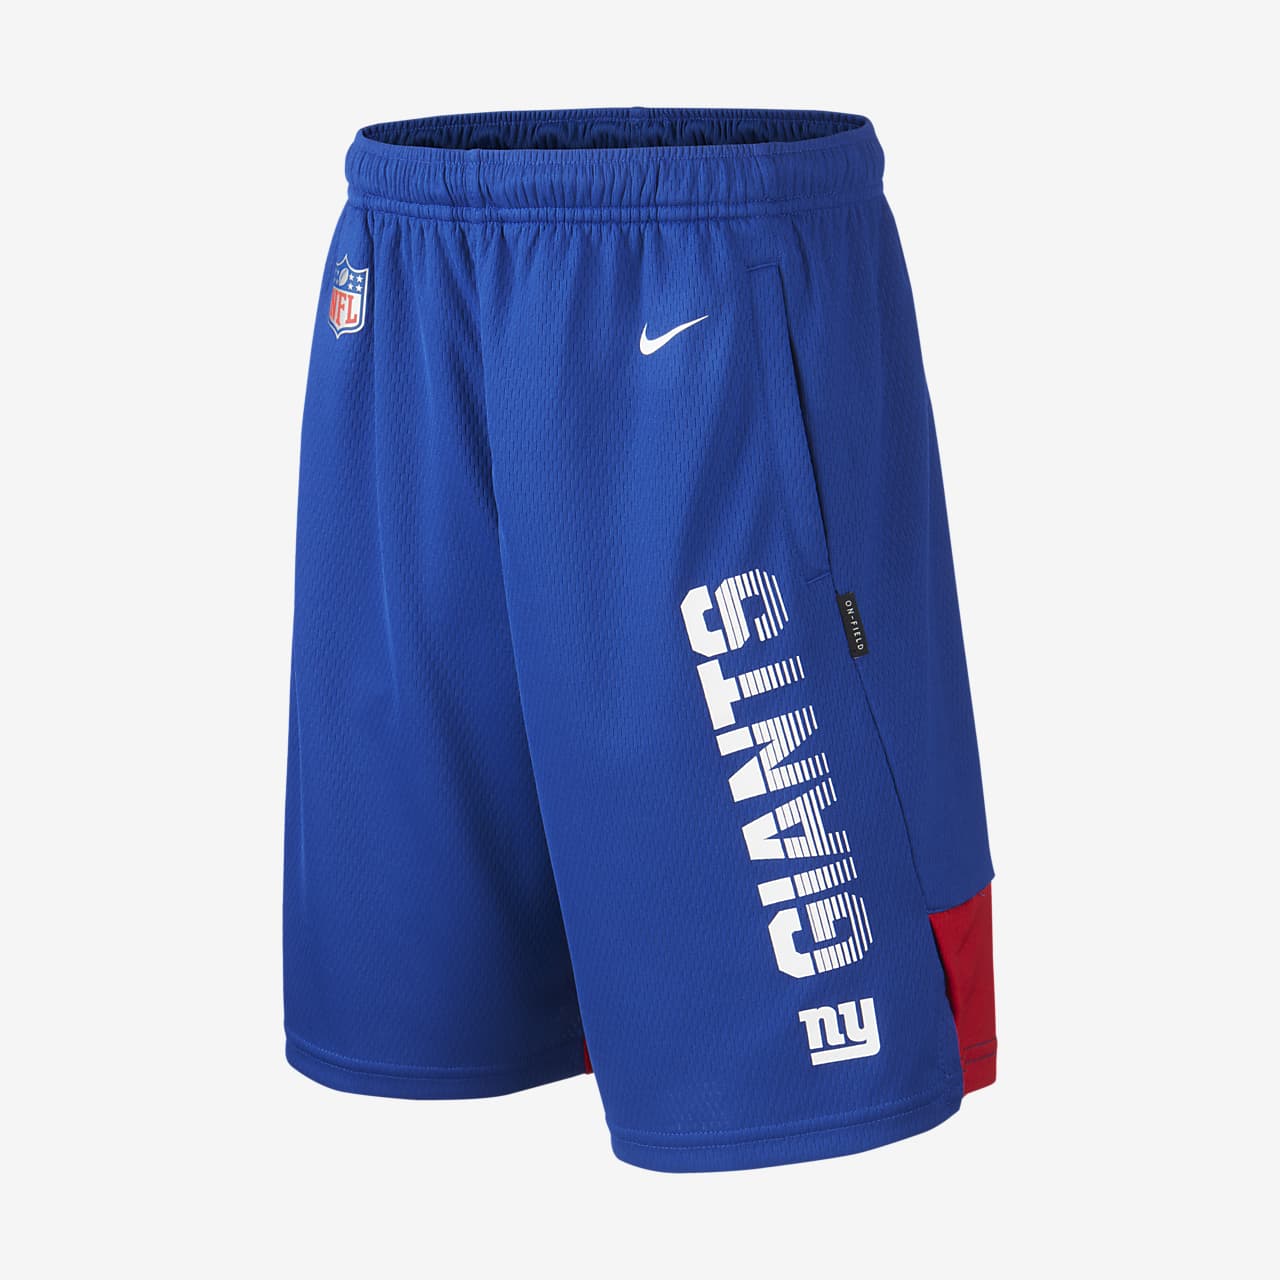 Nike (NFL Giants) Older Kids' Shorts 